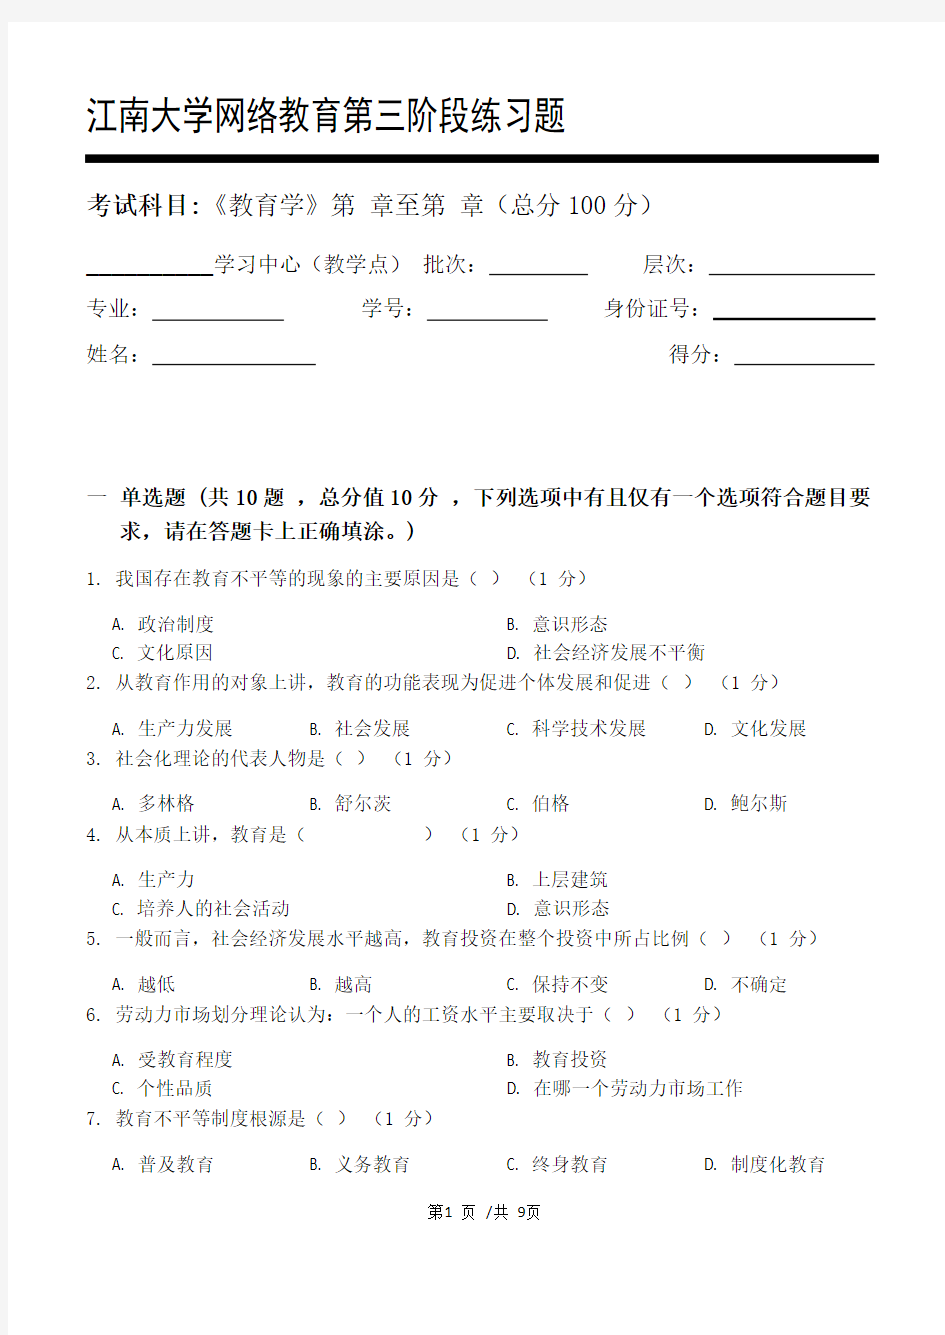 教育学第3阶段练习题江大学考试题库及答案一科共有三个阶段,这是其中一个阶段。答案在最后一页